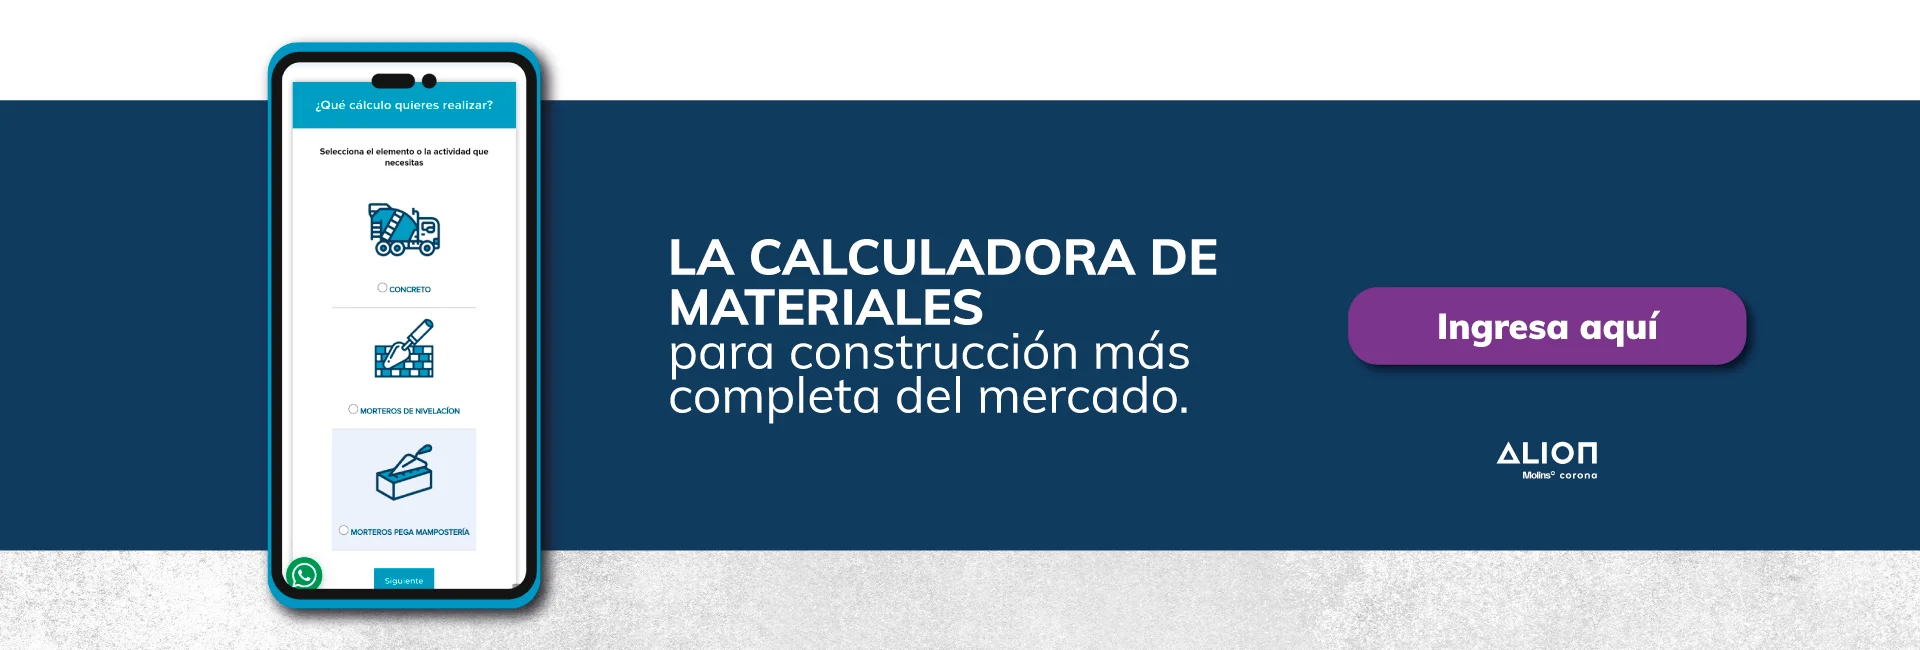 La calculadora de materiales